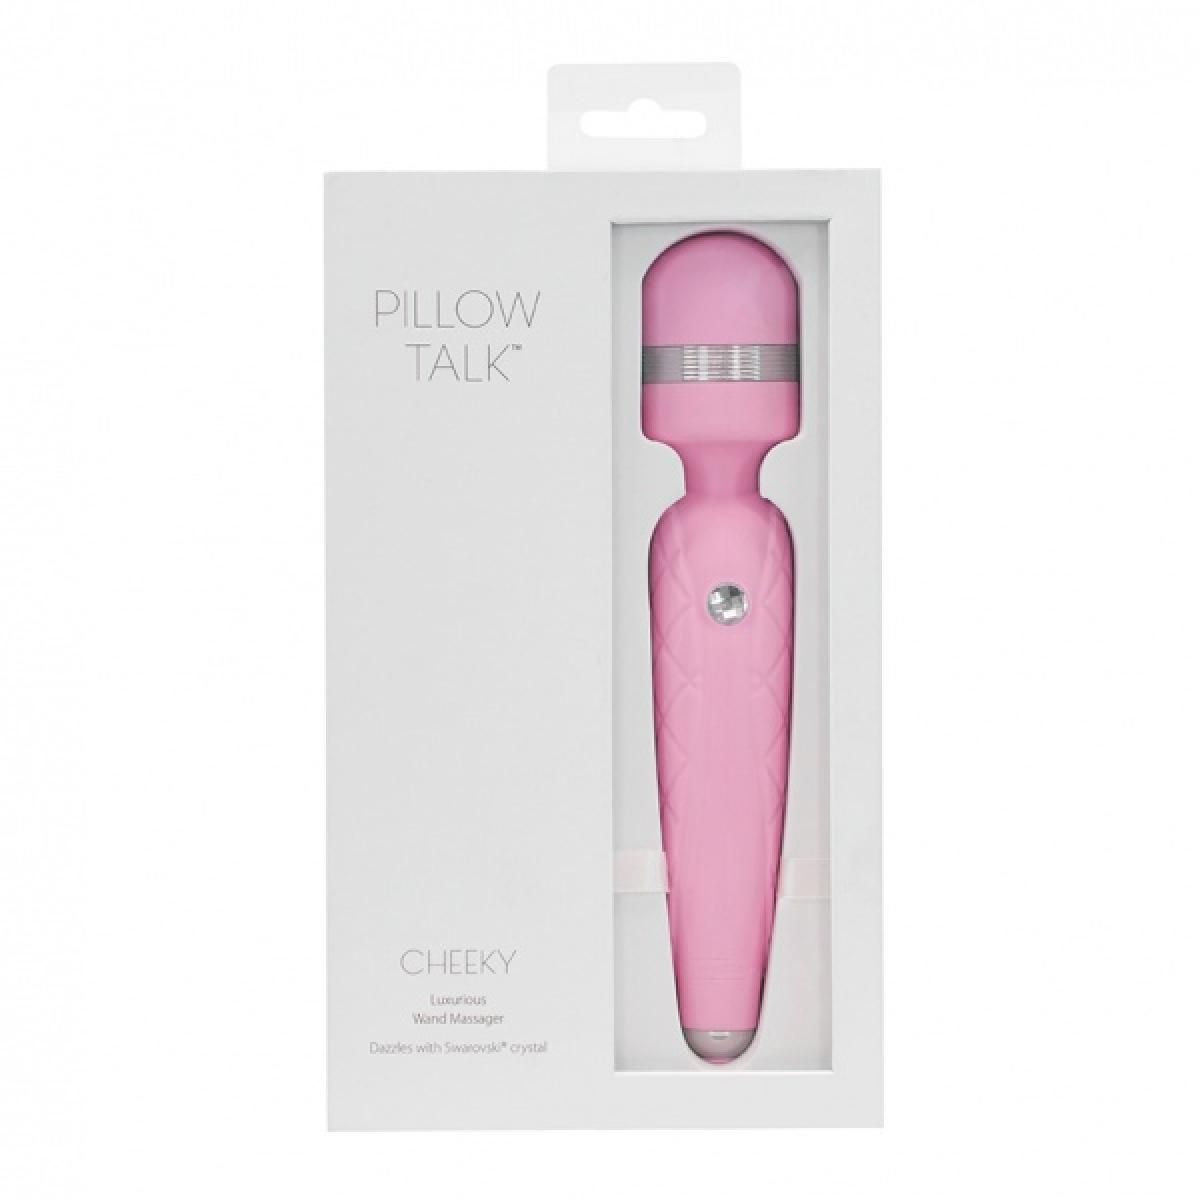 PILLOW TALK Pillow Talk Wand Cheeky - Rose Vibrator wand-massager